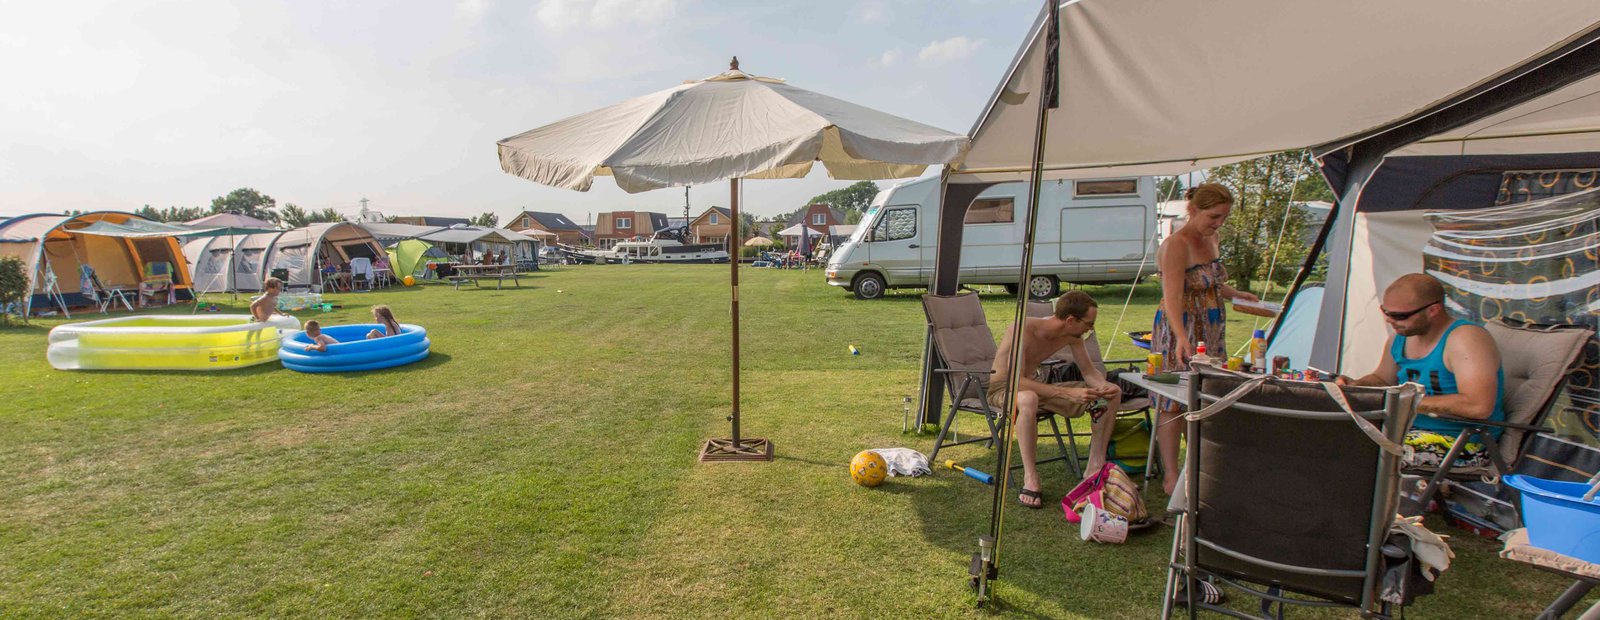 Kamperen bij camping Friesland aan het water met tent en caravan